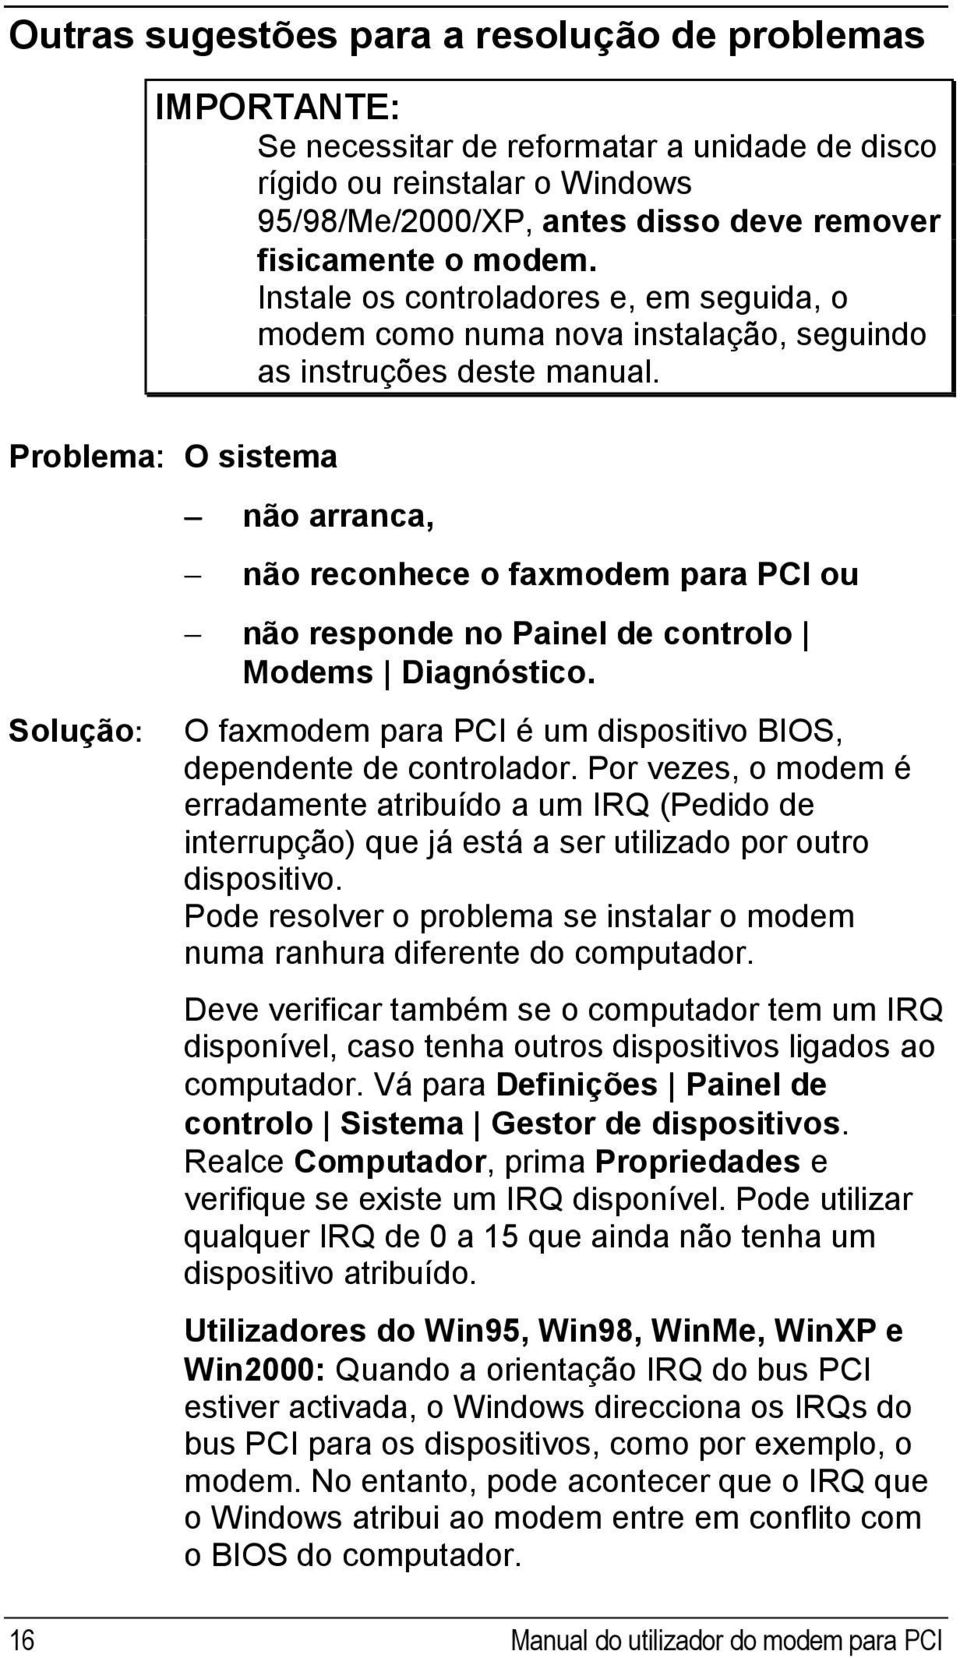 Problema: O sistema Solução: não arranca, não reconhece o faxmodem para PCI ou não responde no Painel de controlo Modems Diagnóstico.